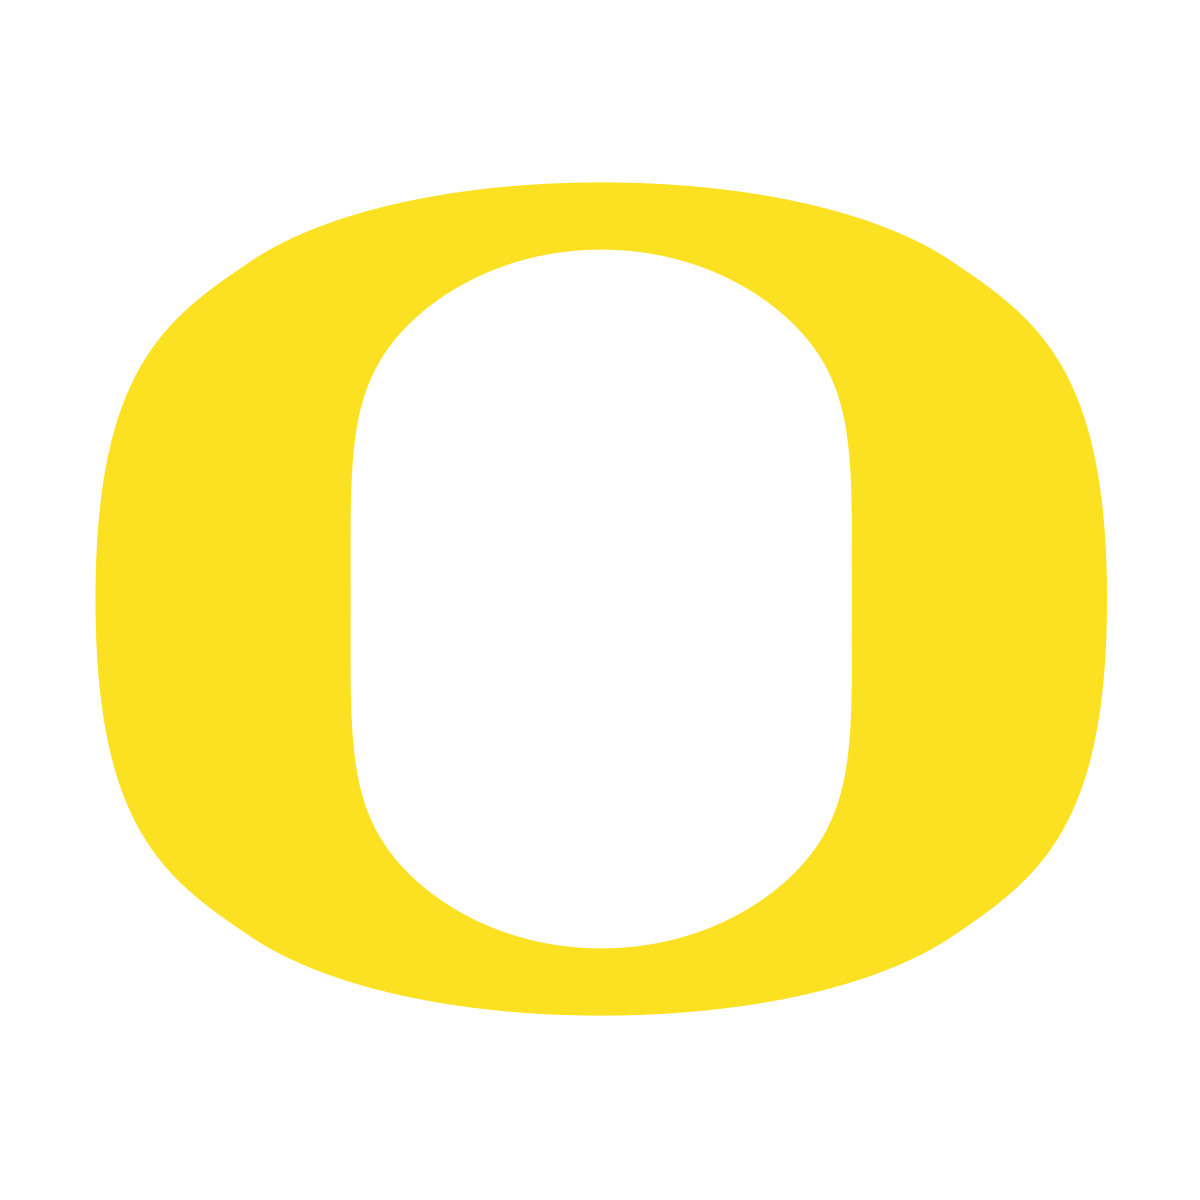 Oregon Ducks logo